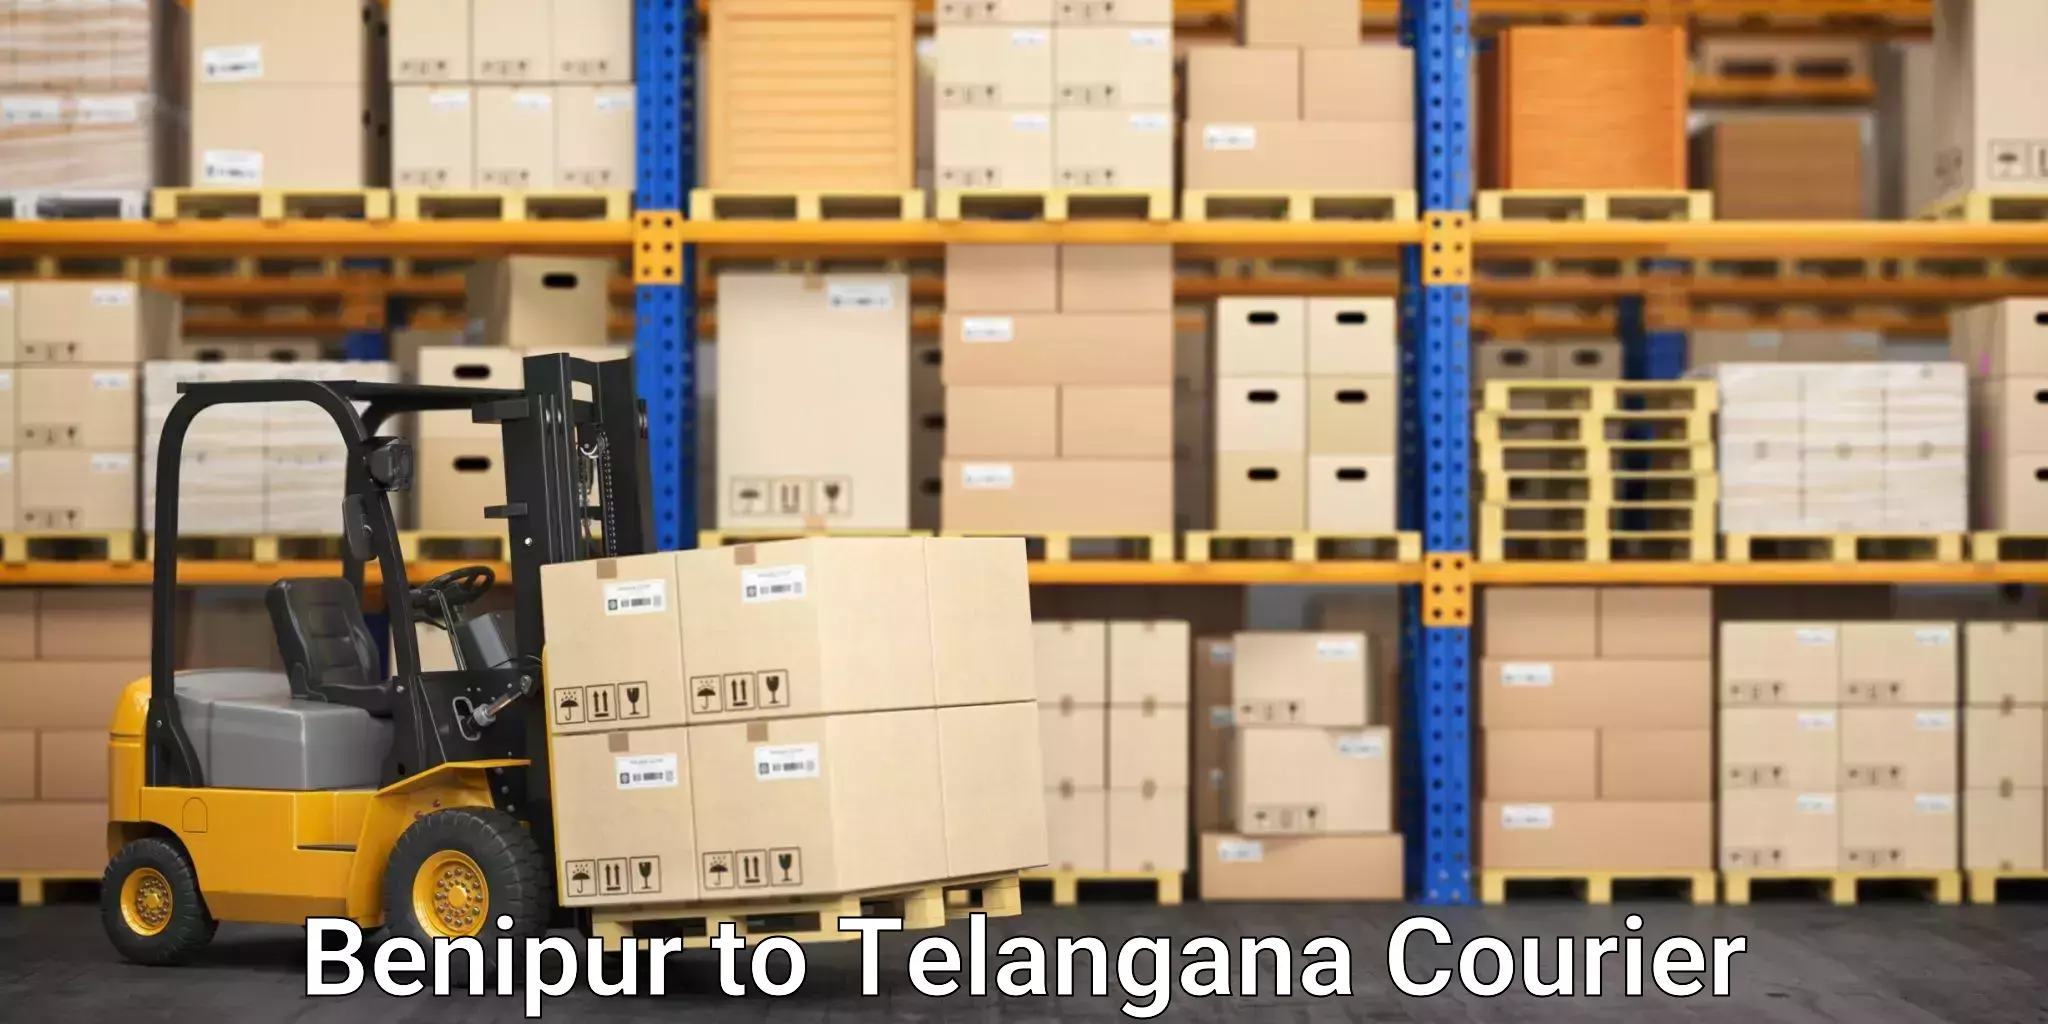 Stress-free household moving Benipur to Telangana